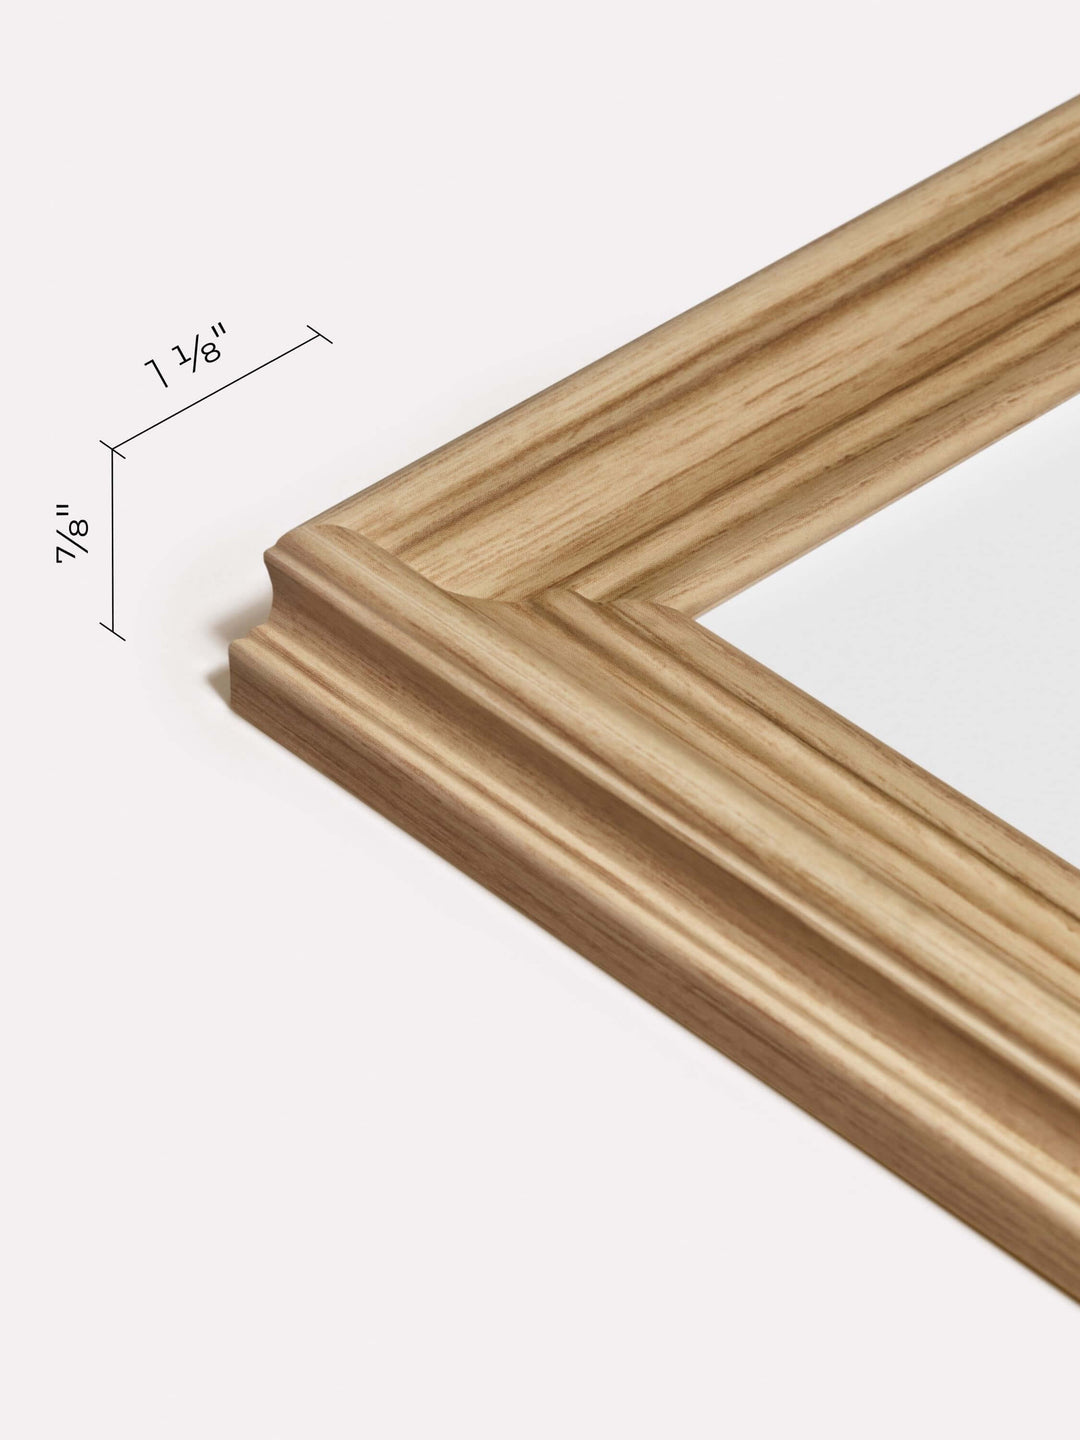 11x17-inch Decorative Frame, Oak - Close-up view